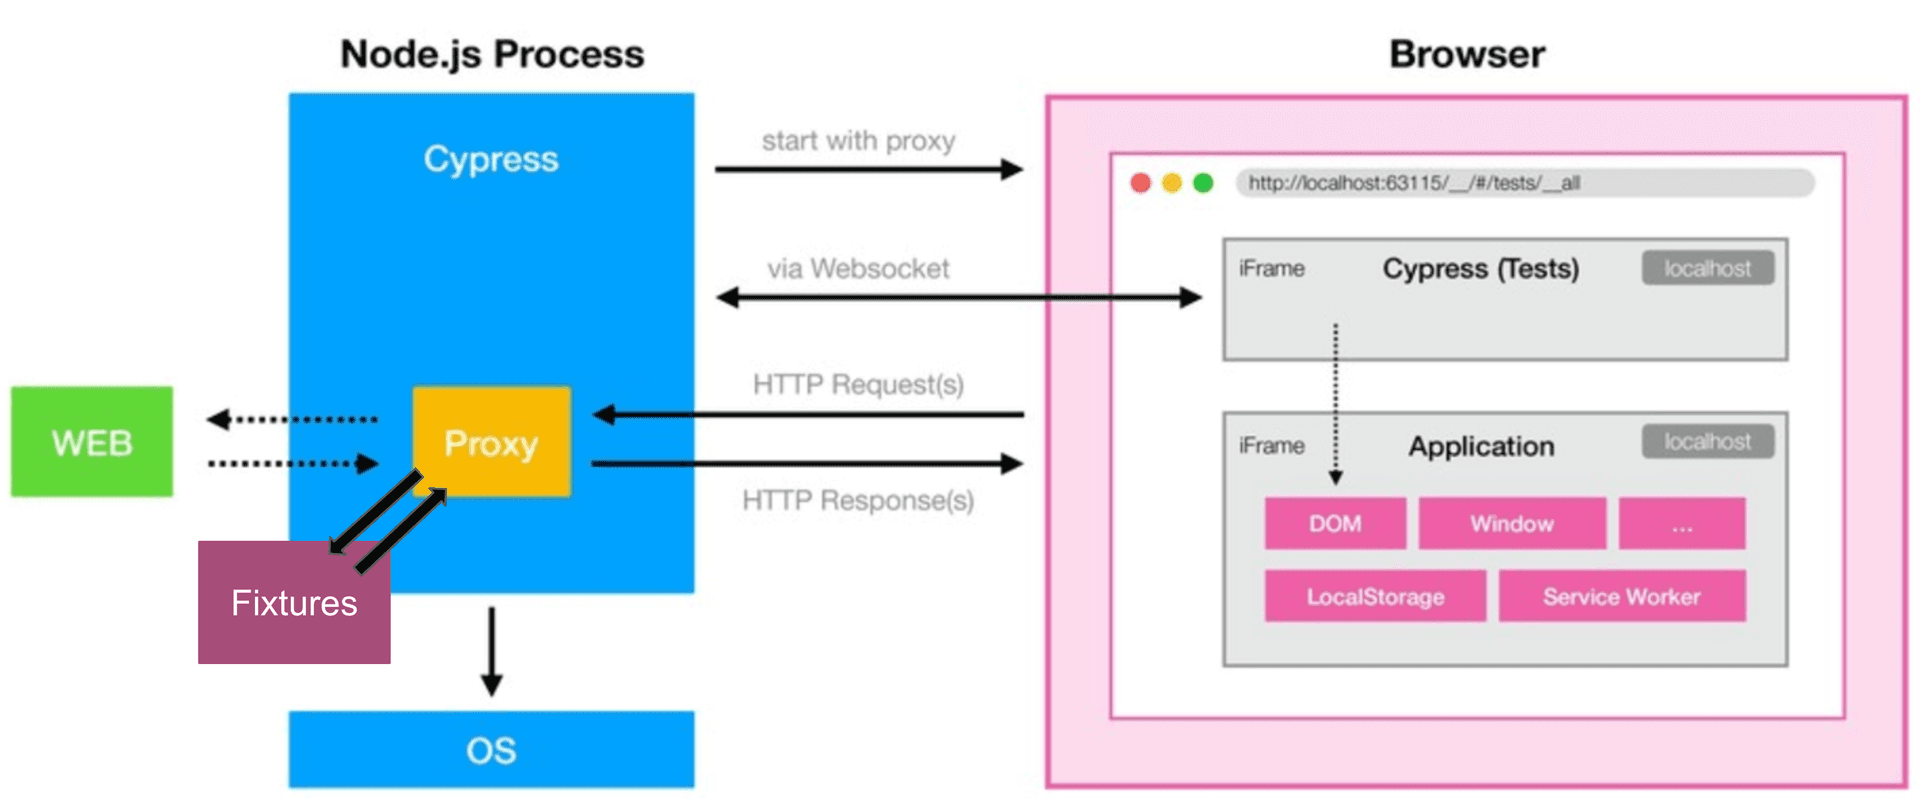 Cypress besteht aus einem Node.JS Prozess, der auch als HTTP Proxy und Interceptor dient, sowie iFrames die im Browser die Anwendung und ihre Tests ausführen